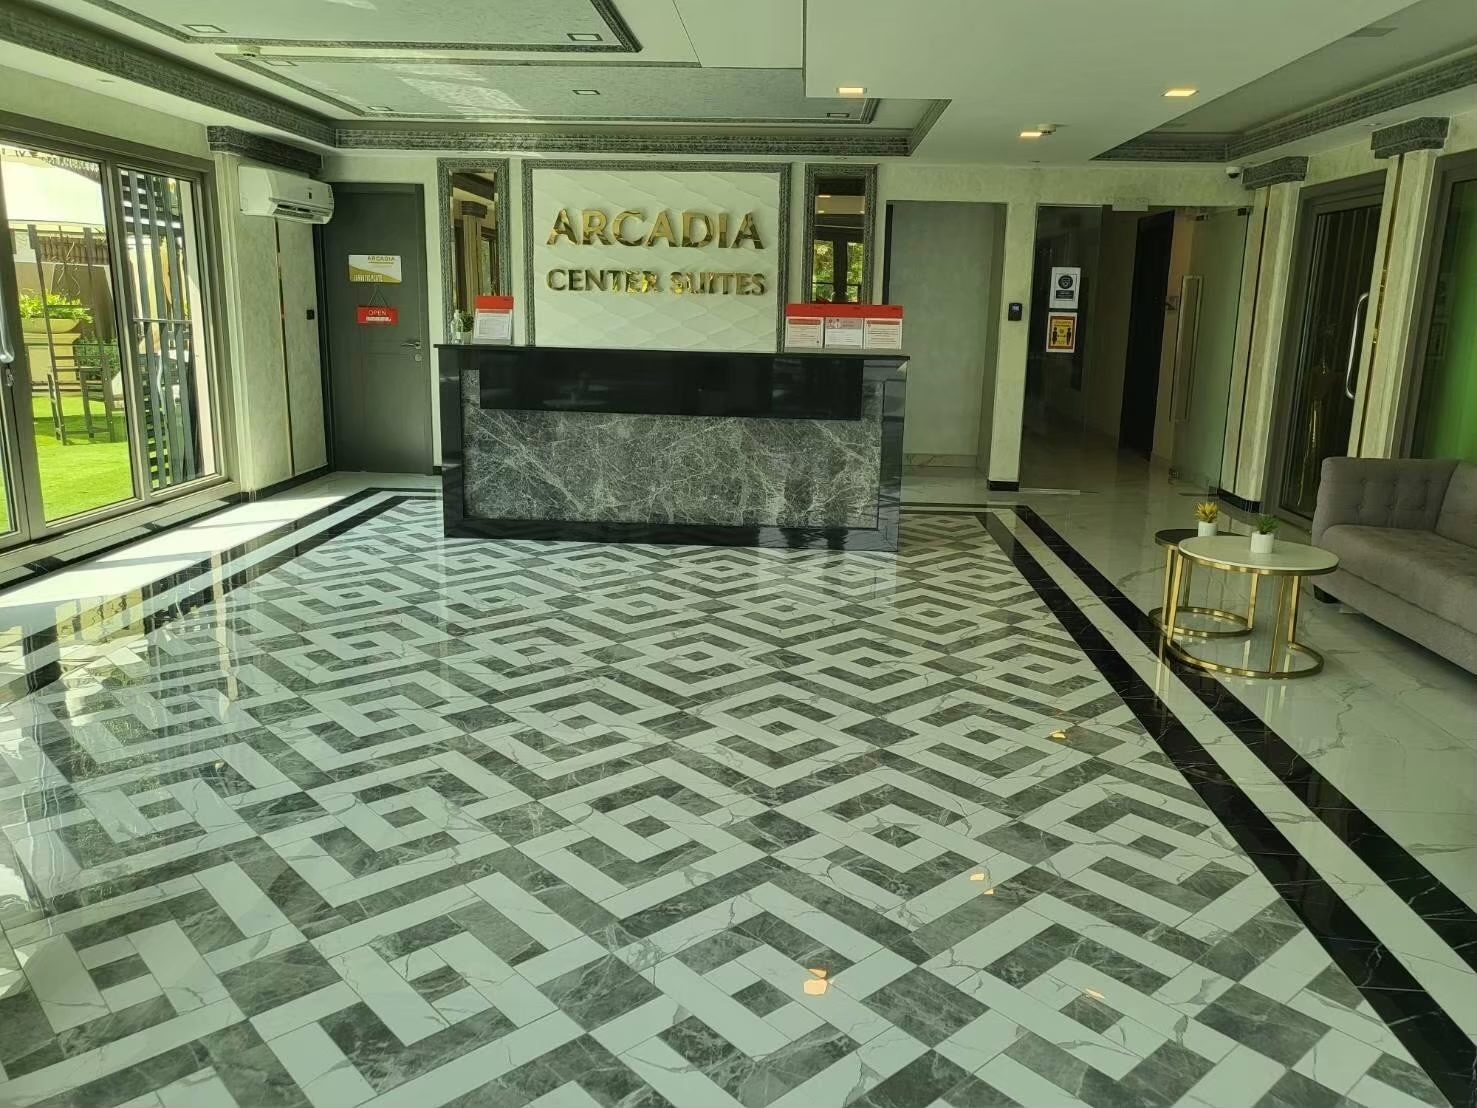 Arcadia Center Suites